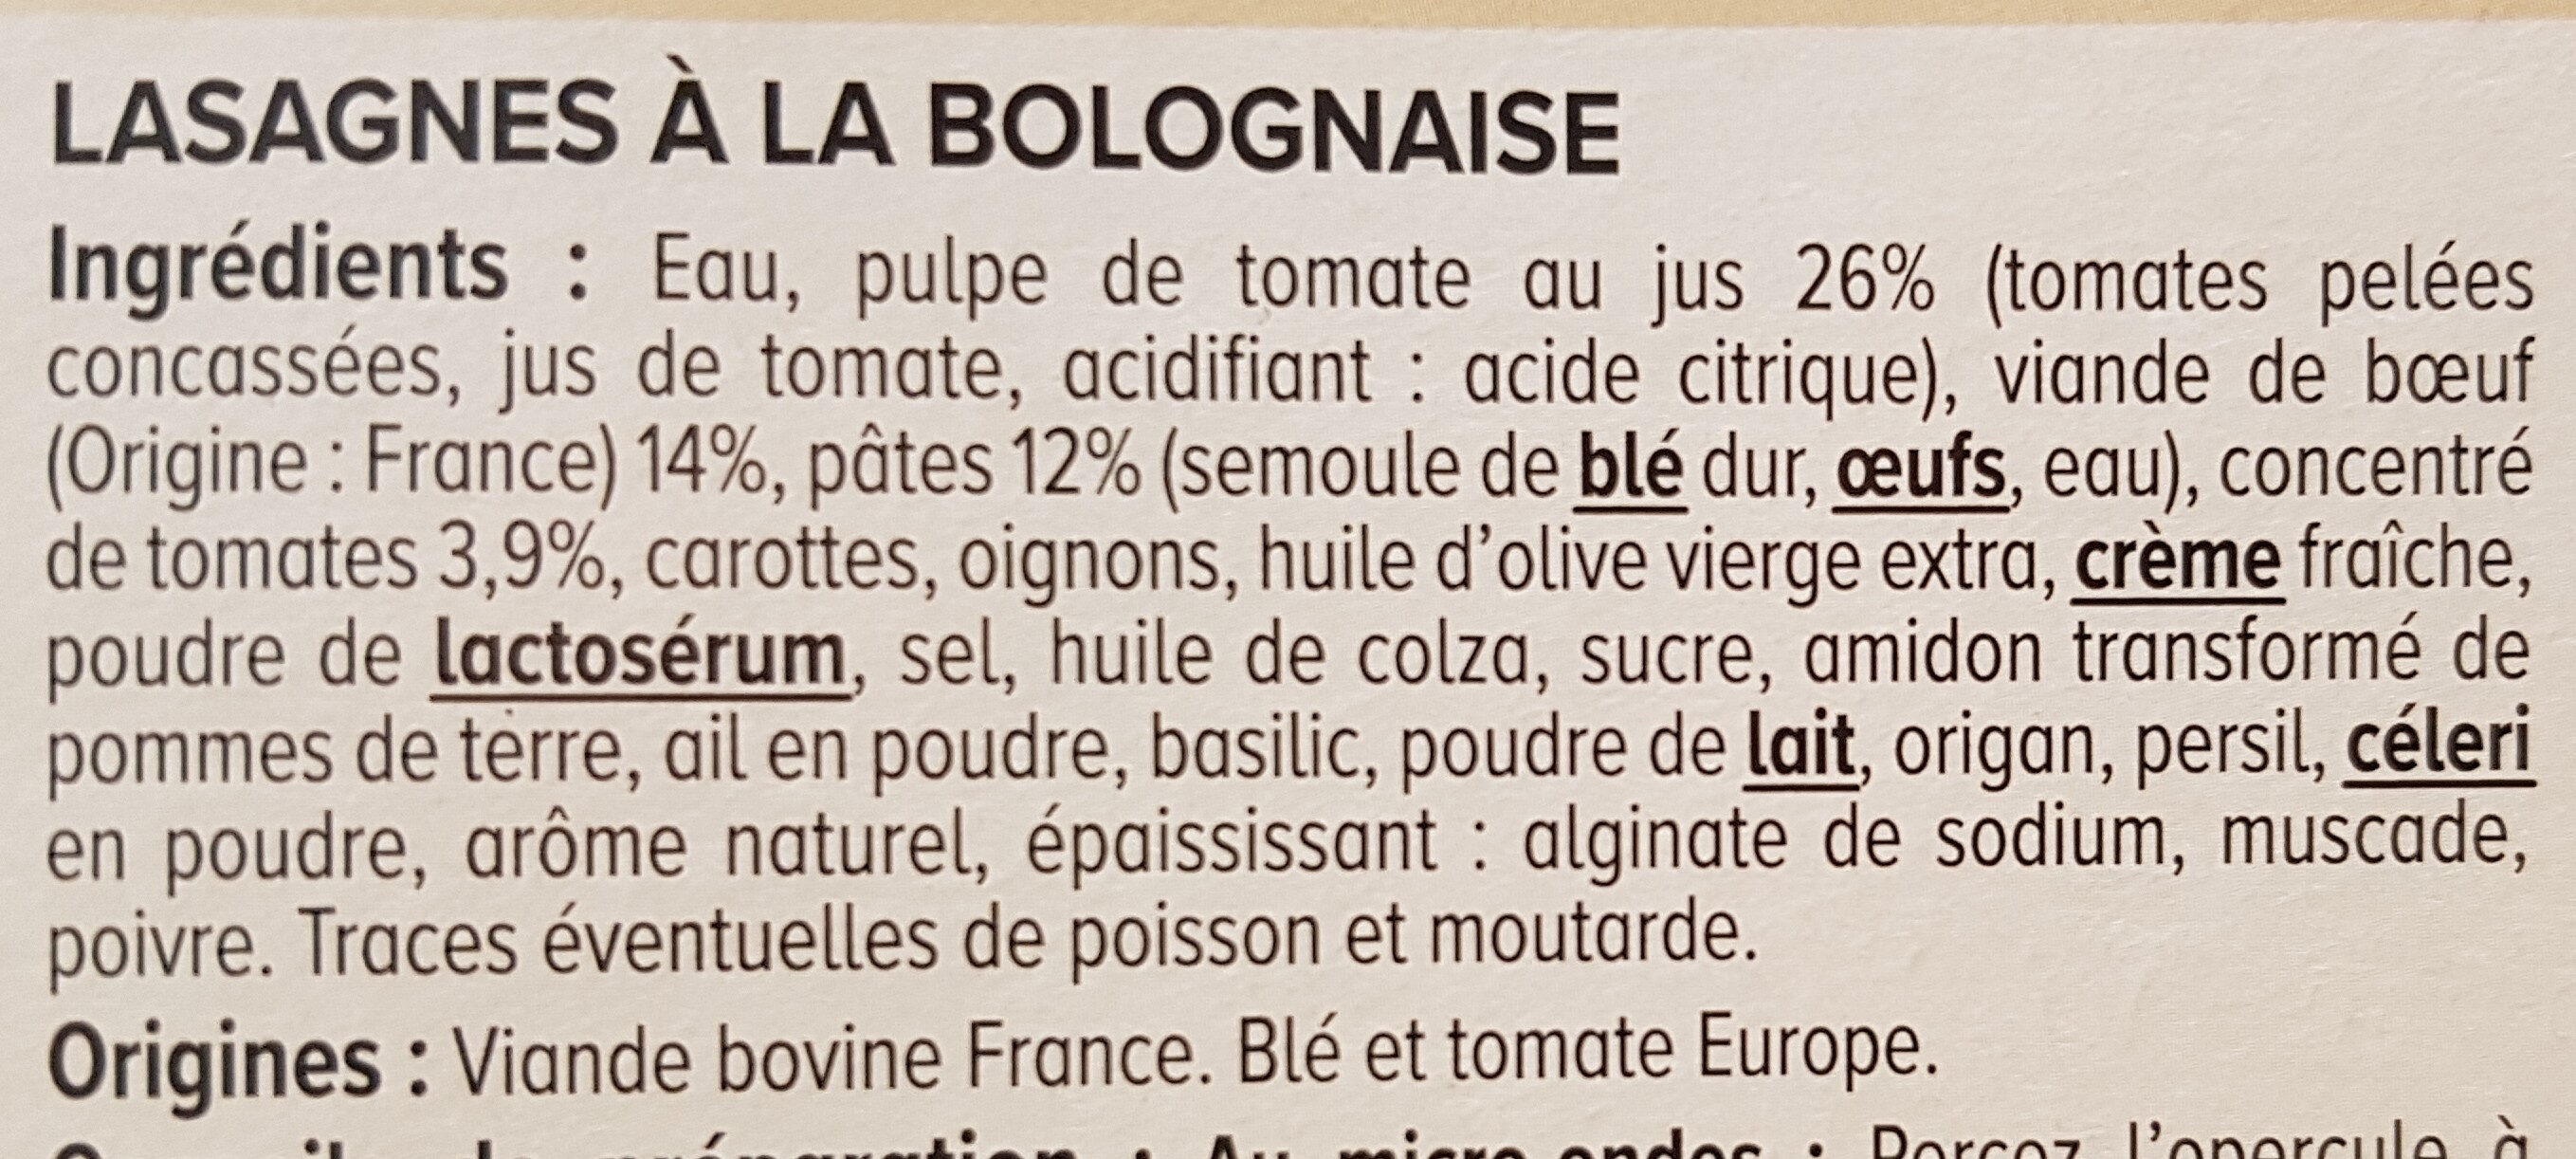 Lasagnes à la bolognaise - Ingredients - fr